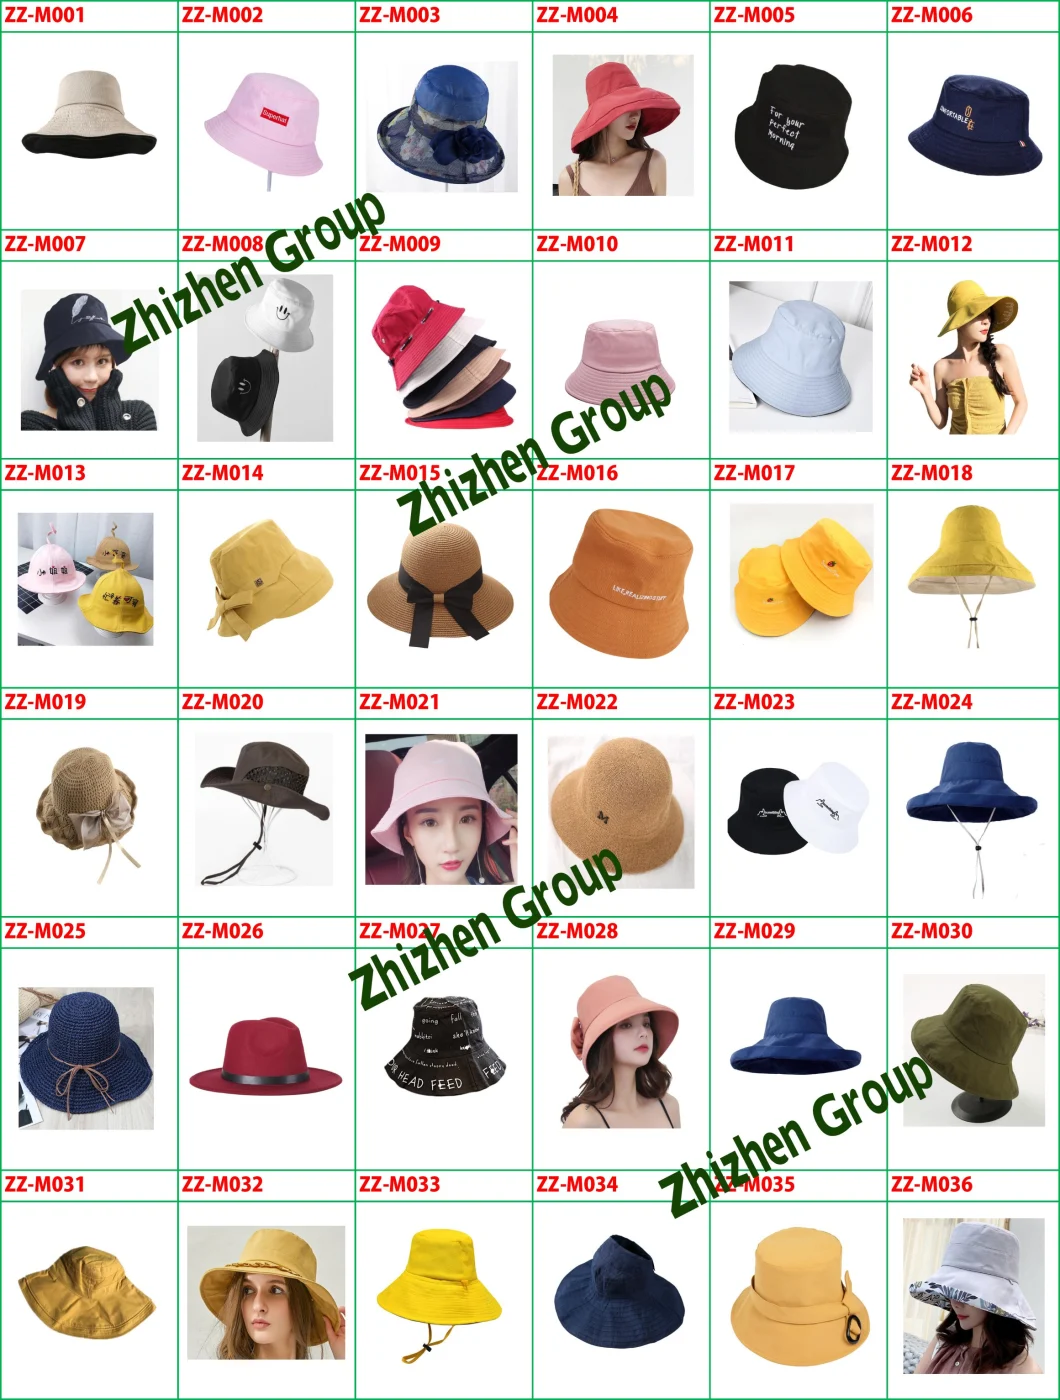 Kids Hats, Kids Caps, Adult Caps, Adult Hat, Couple Hats, Couple Cap, Visor, Sun Visor